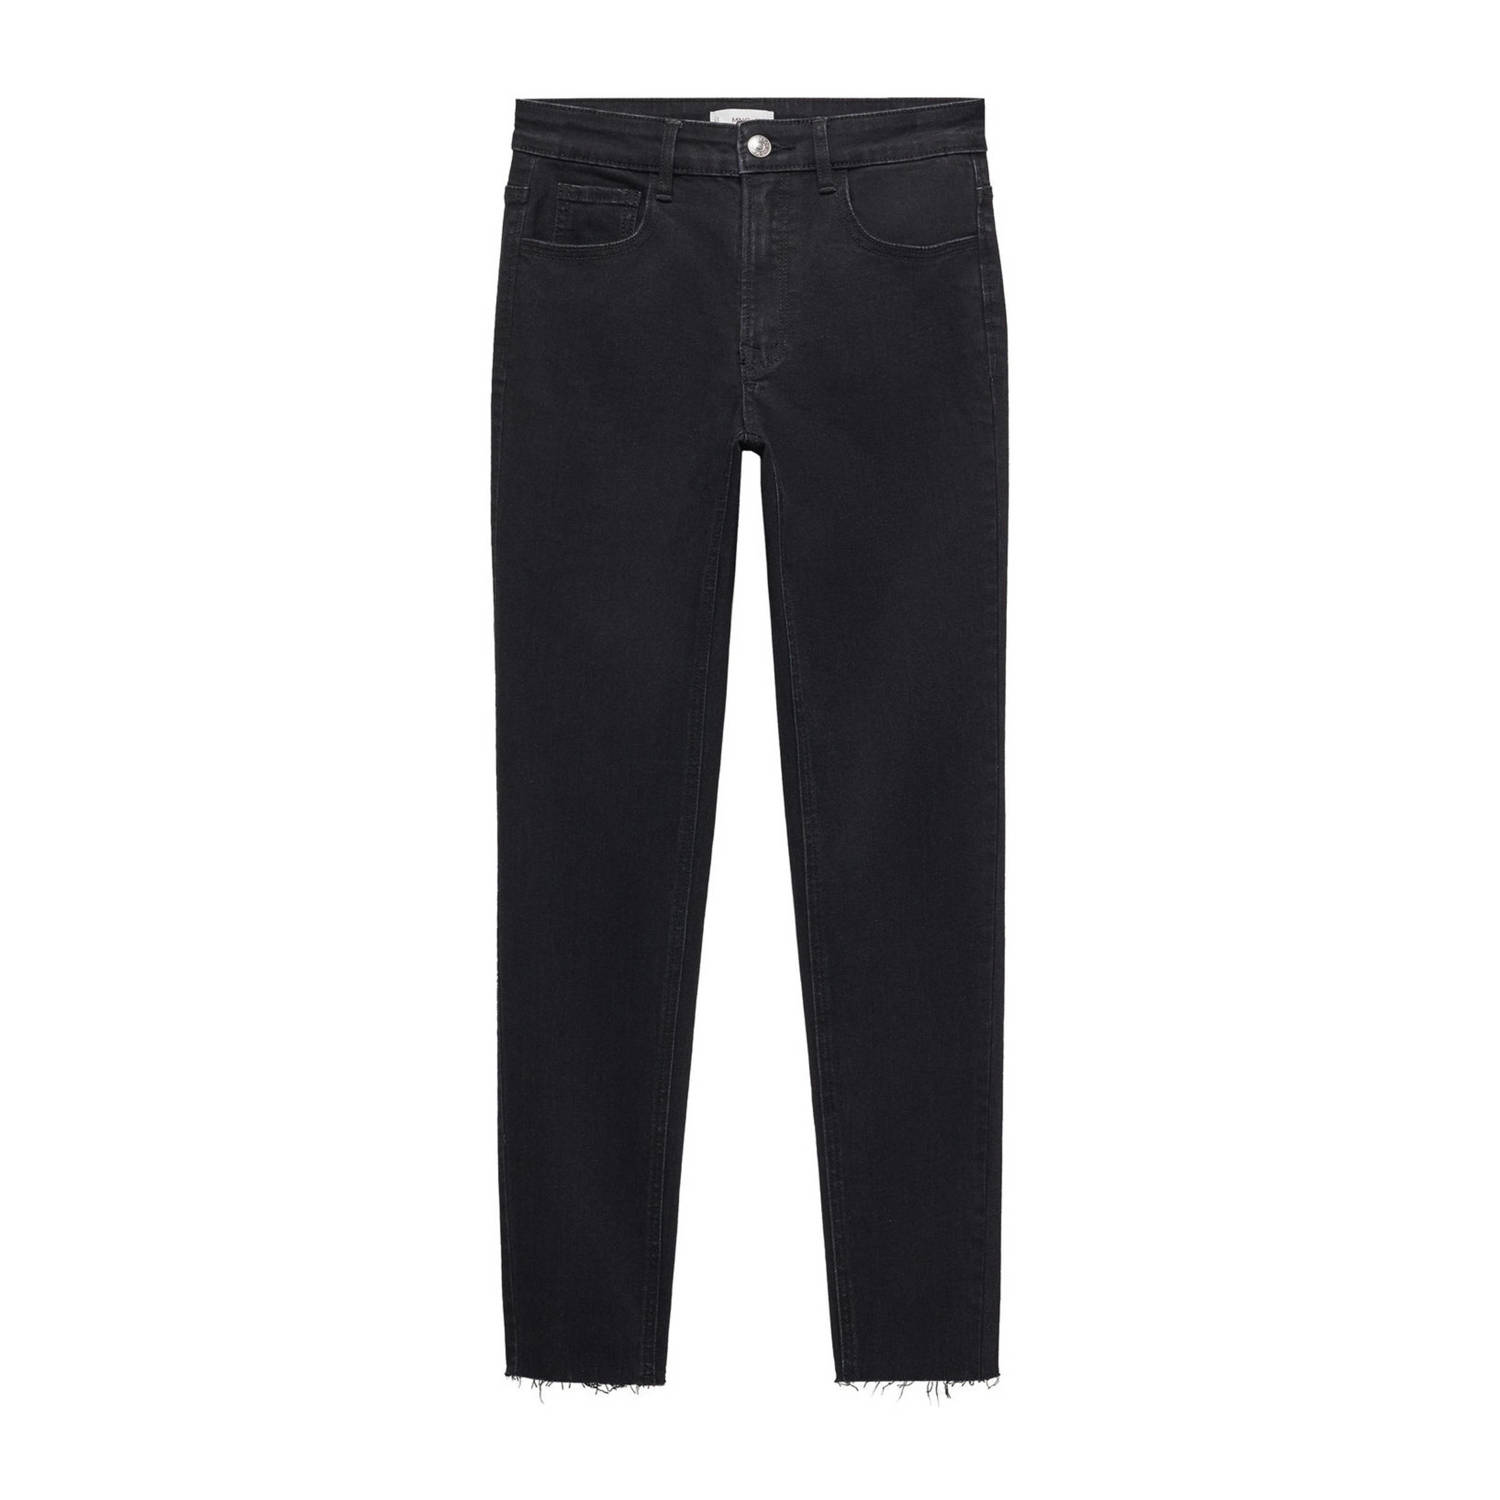 Mango Kids skinny jeans black denim Zwart Meisjes Stretchdenim 152(XXS)